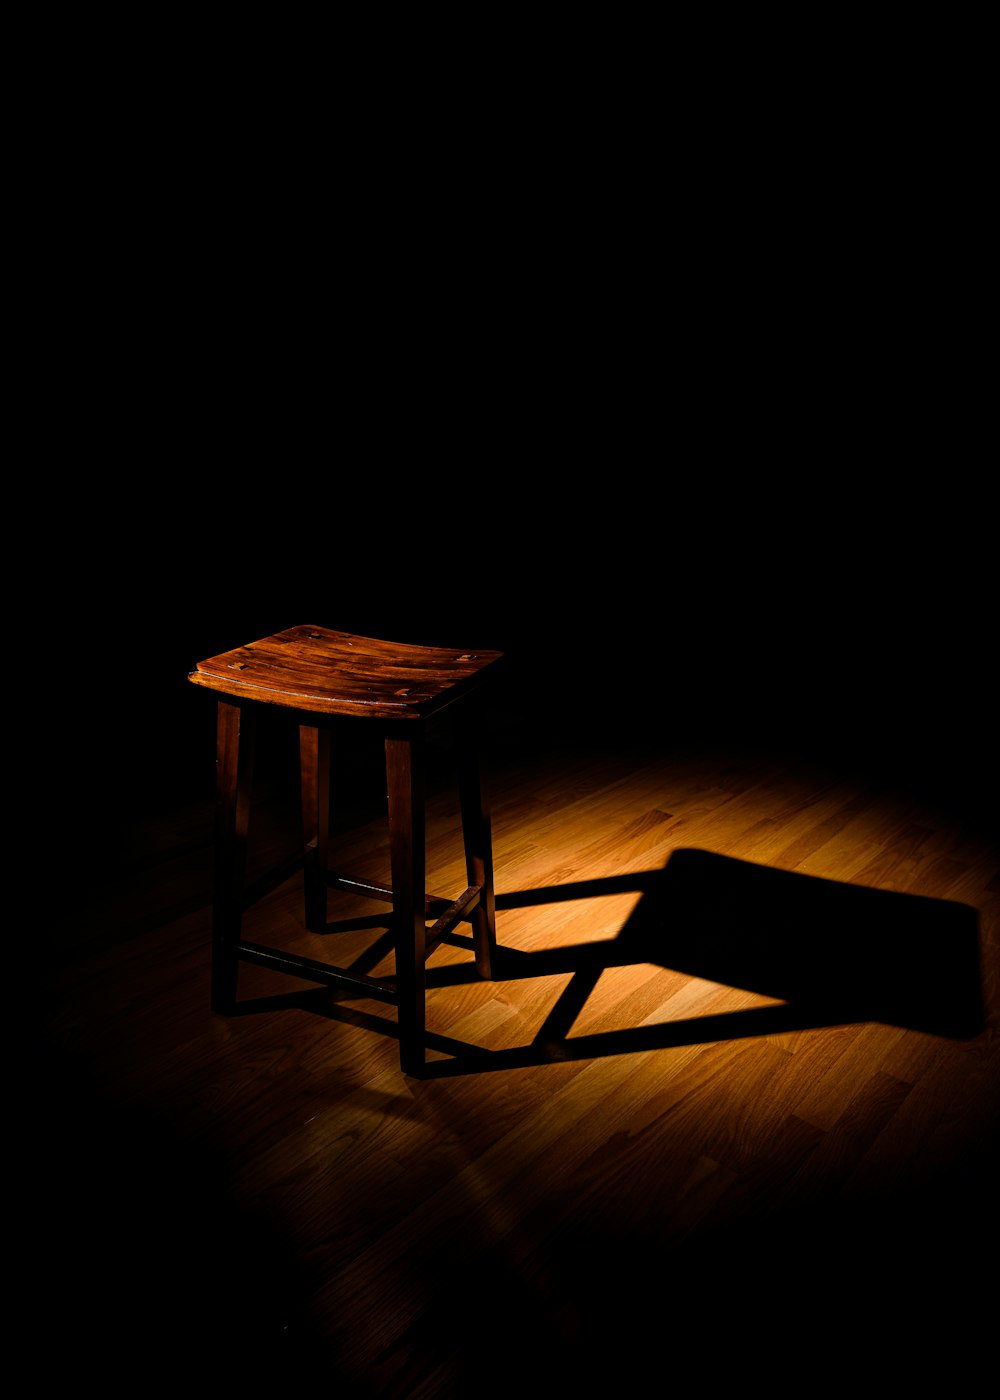 brown wooden chair on brown wooden floor